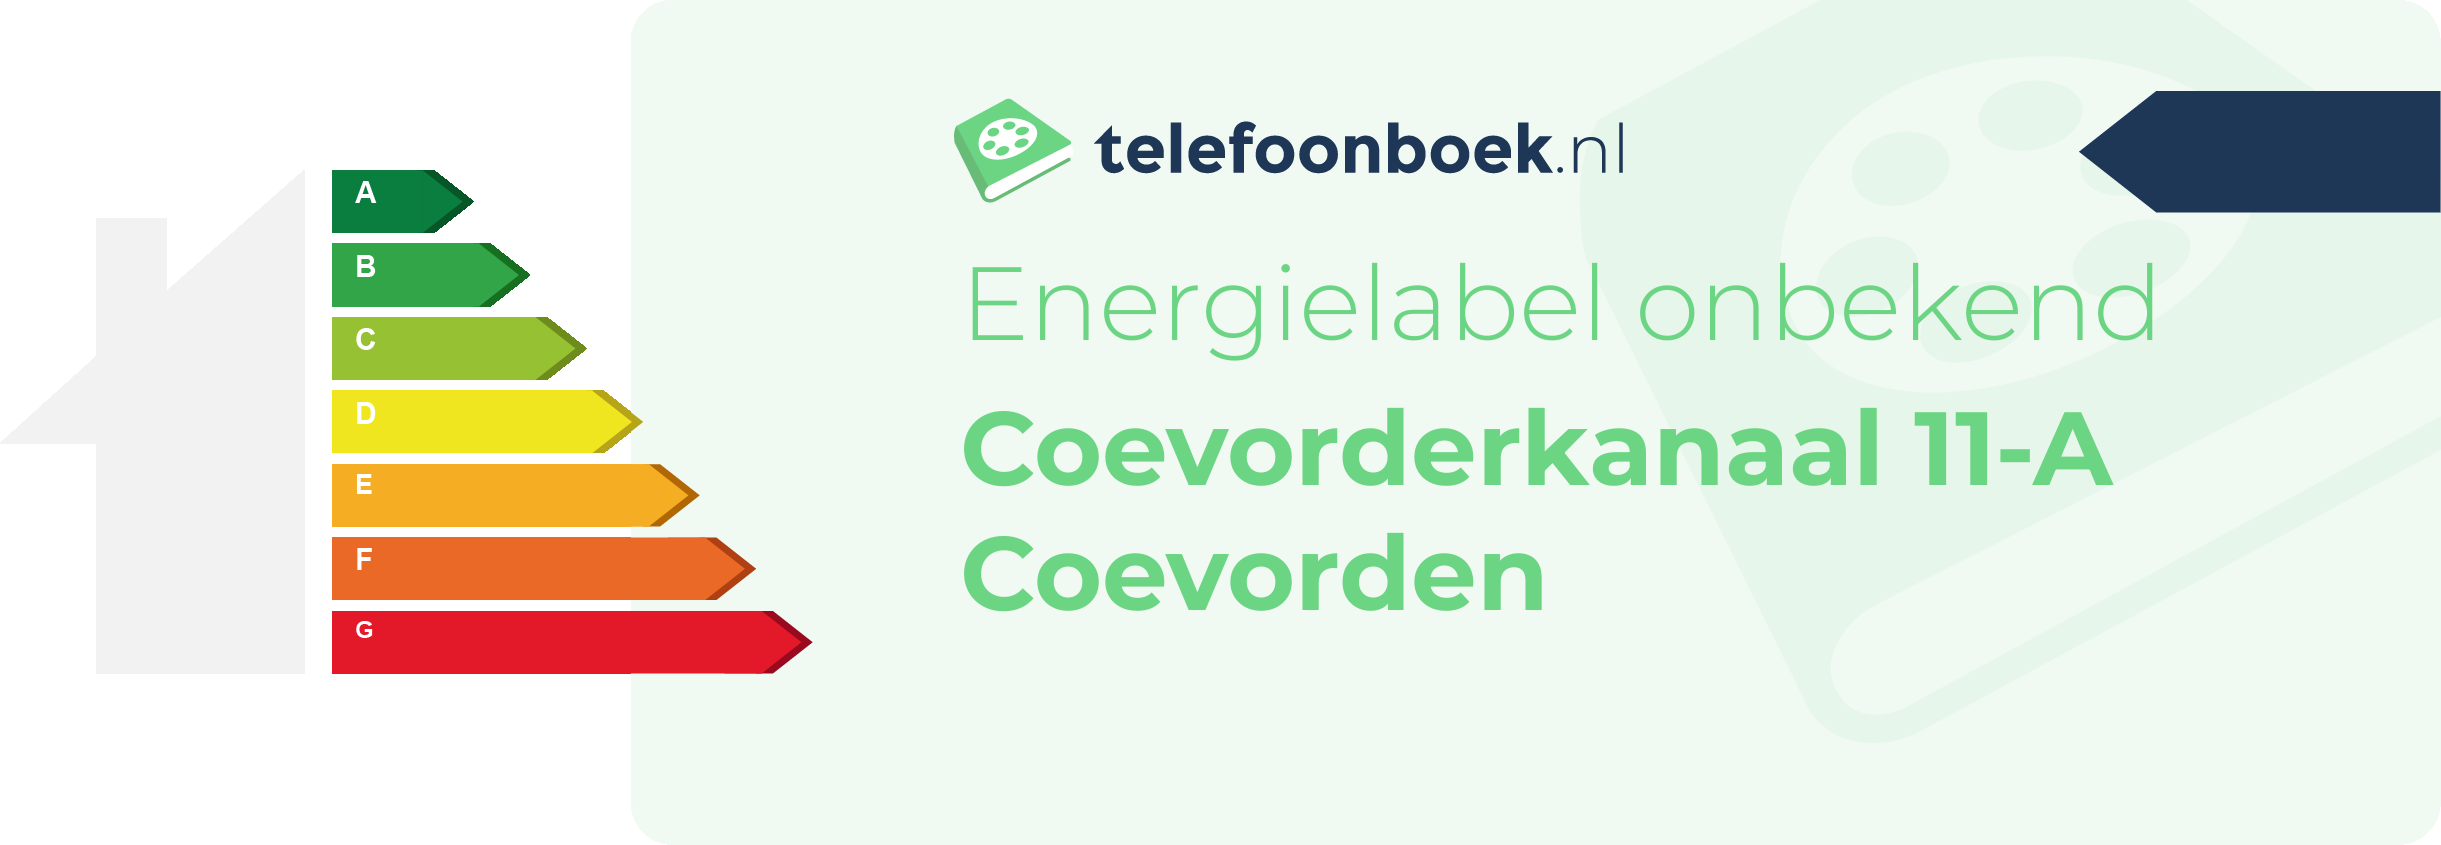 Energielabel Coevorderkanaal 11-A Coevorden